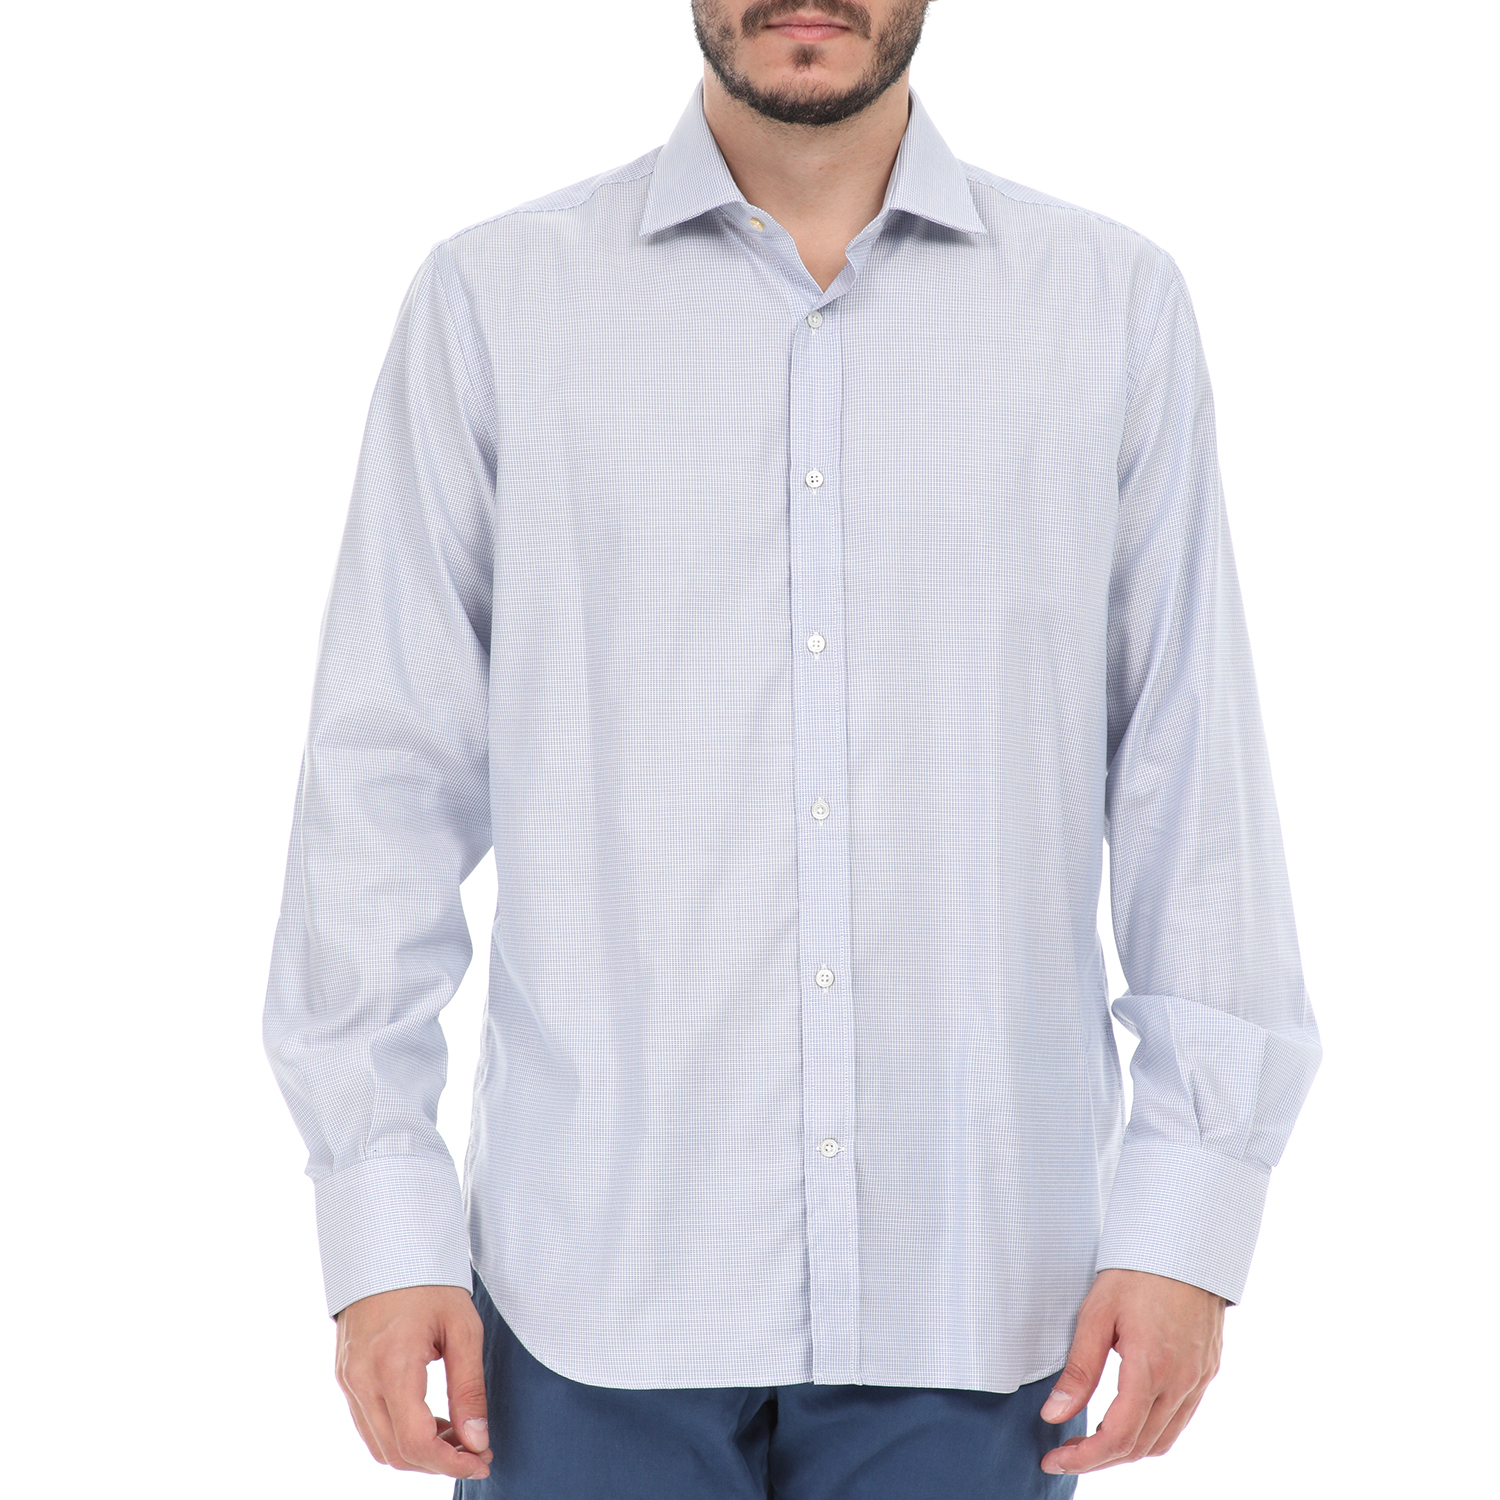 Ανδρικά/Ρούχα/Πουκάμισα/Μακρυμάνικα BROOKSFIELD - Ανδρικό πουκάμισο BROOKSFIELD μπλε λευκό